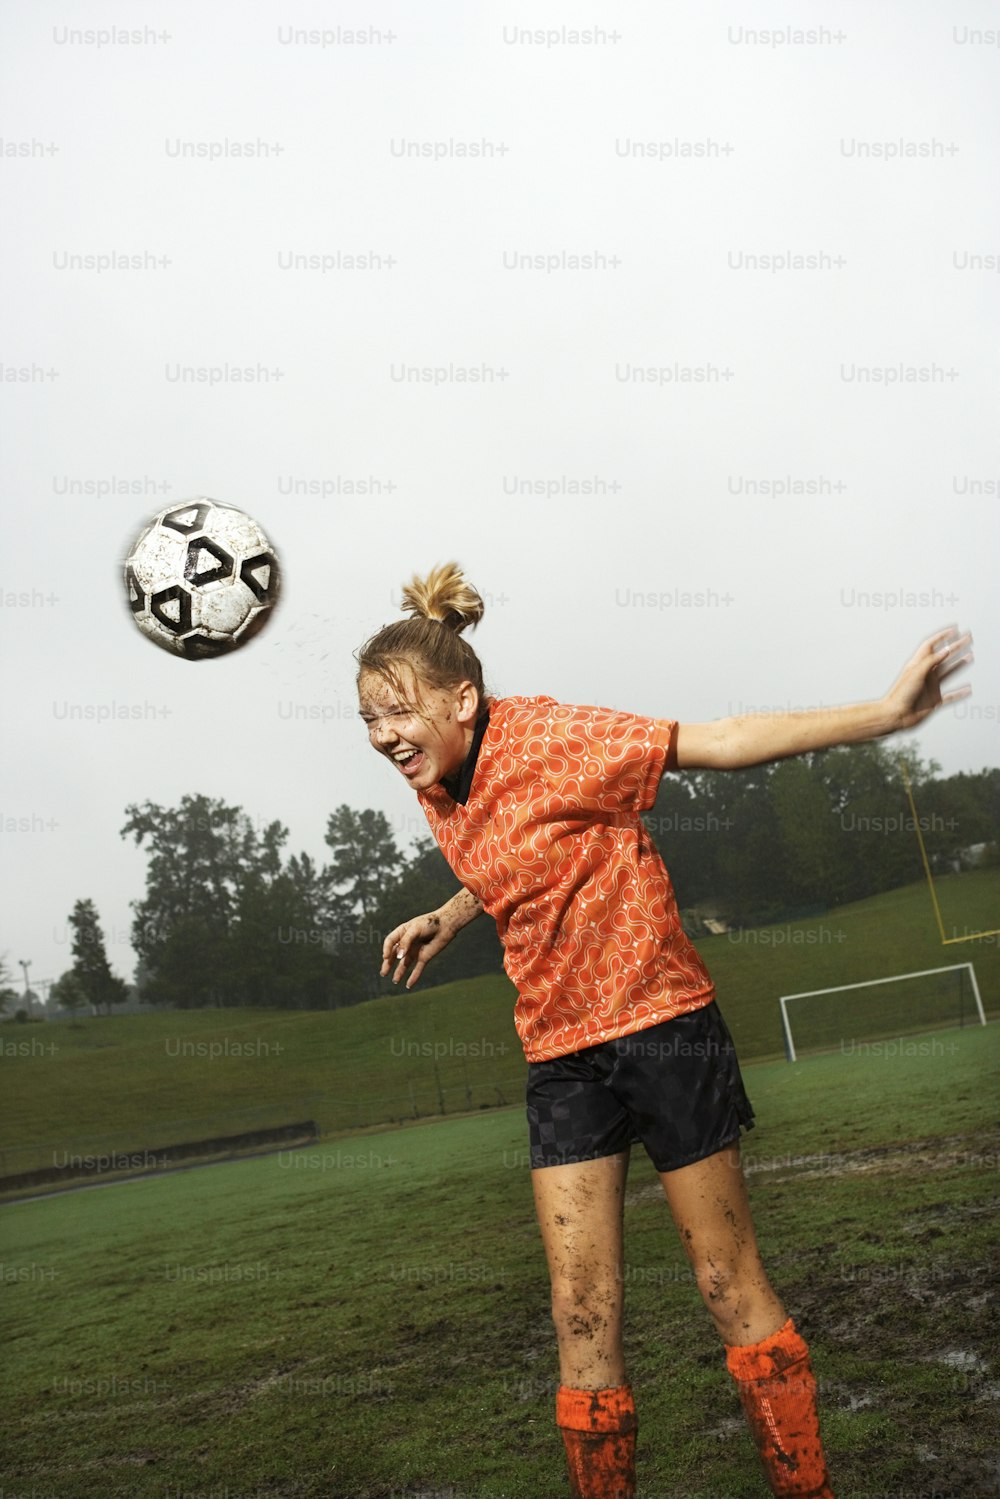 オレンジ色のシャツと黒いショートパンツを着た女性がサッカーボールを蹴る